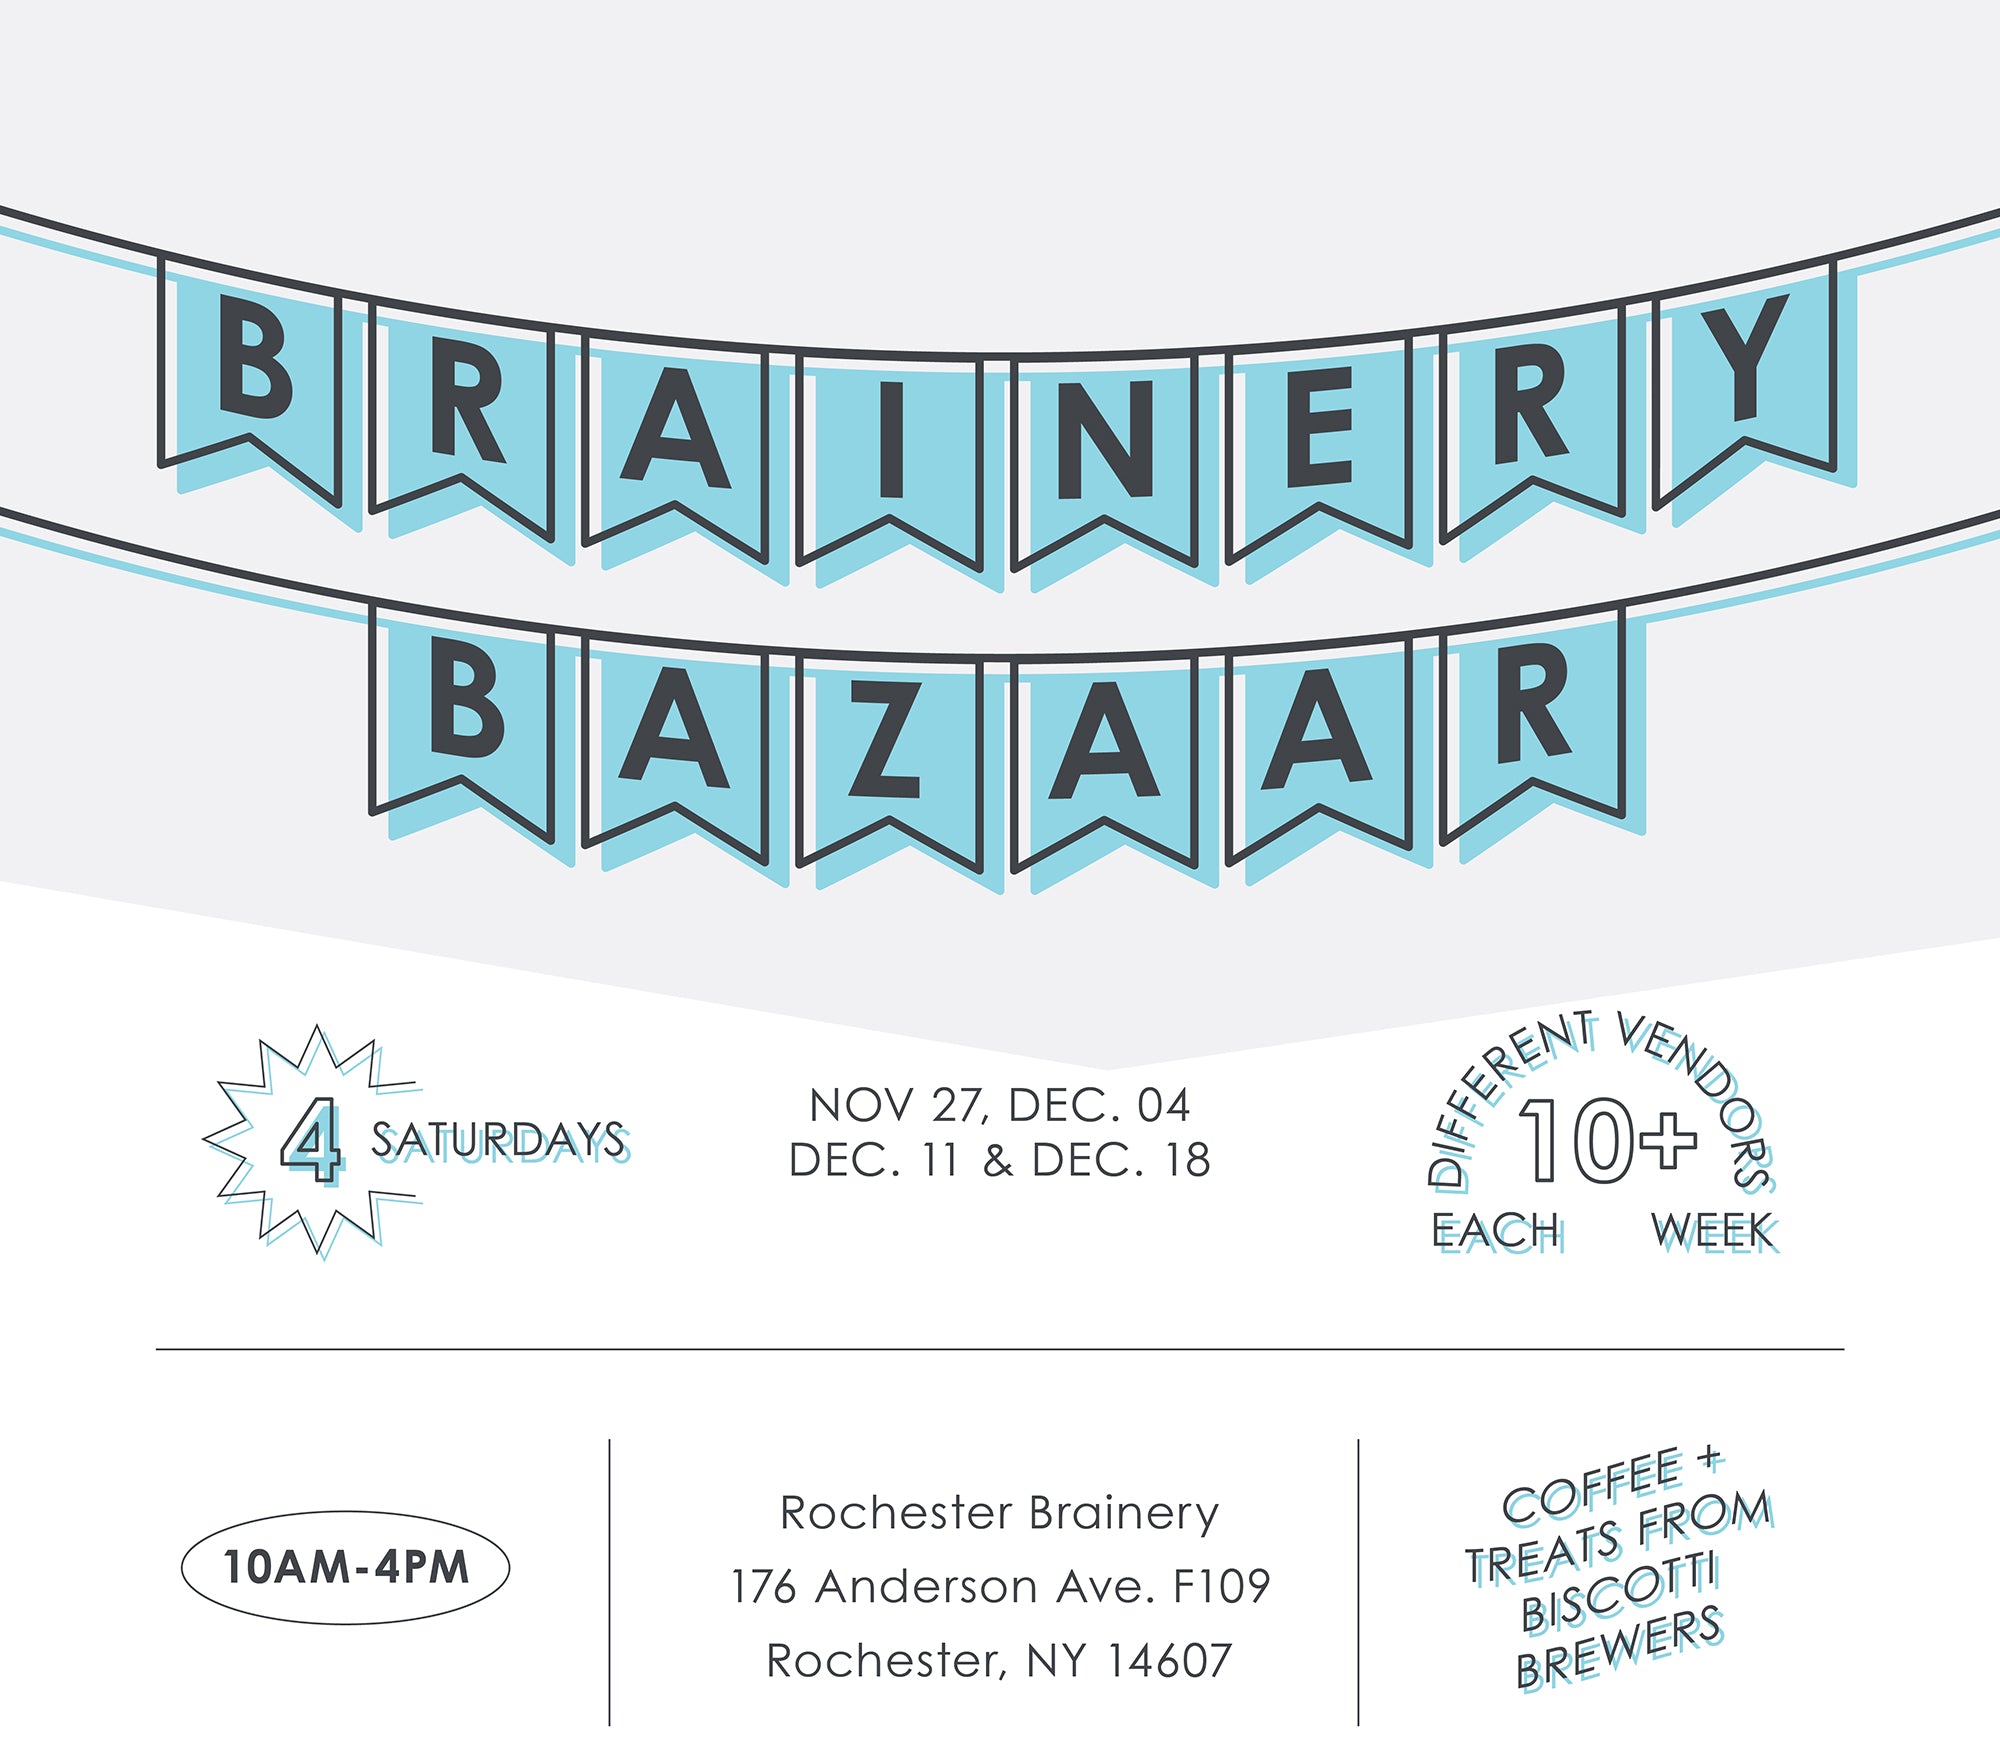 Brainery Bazaar